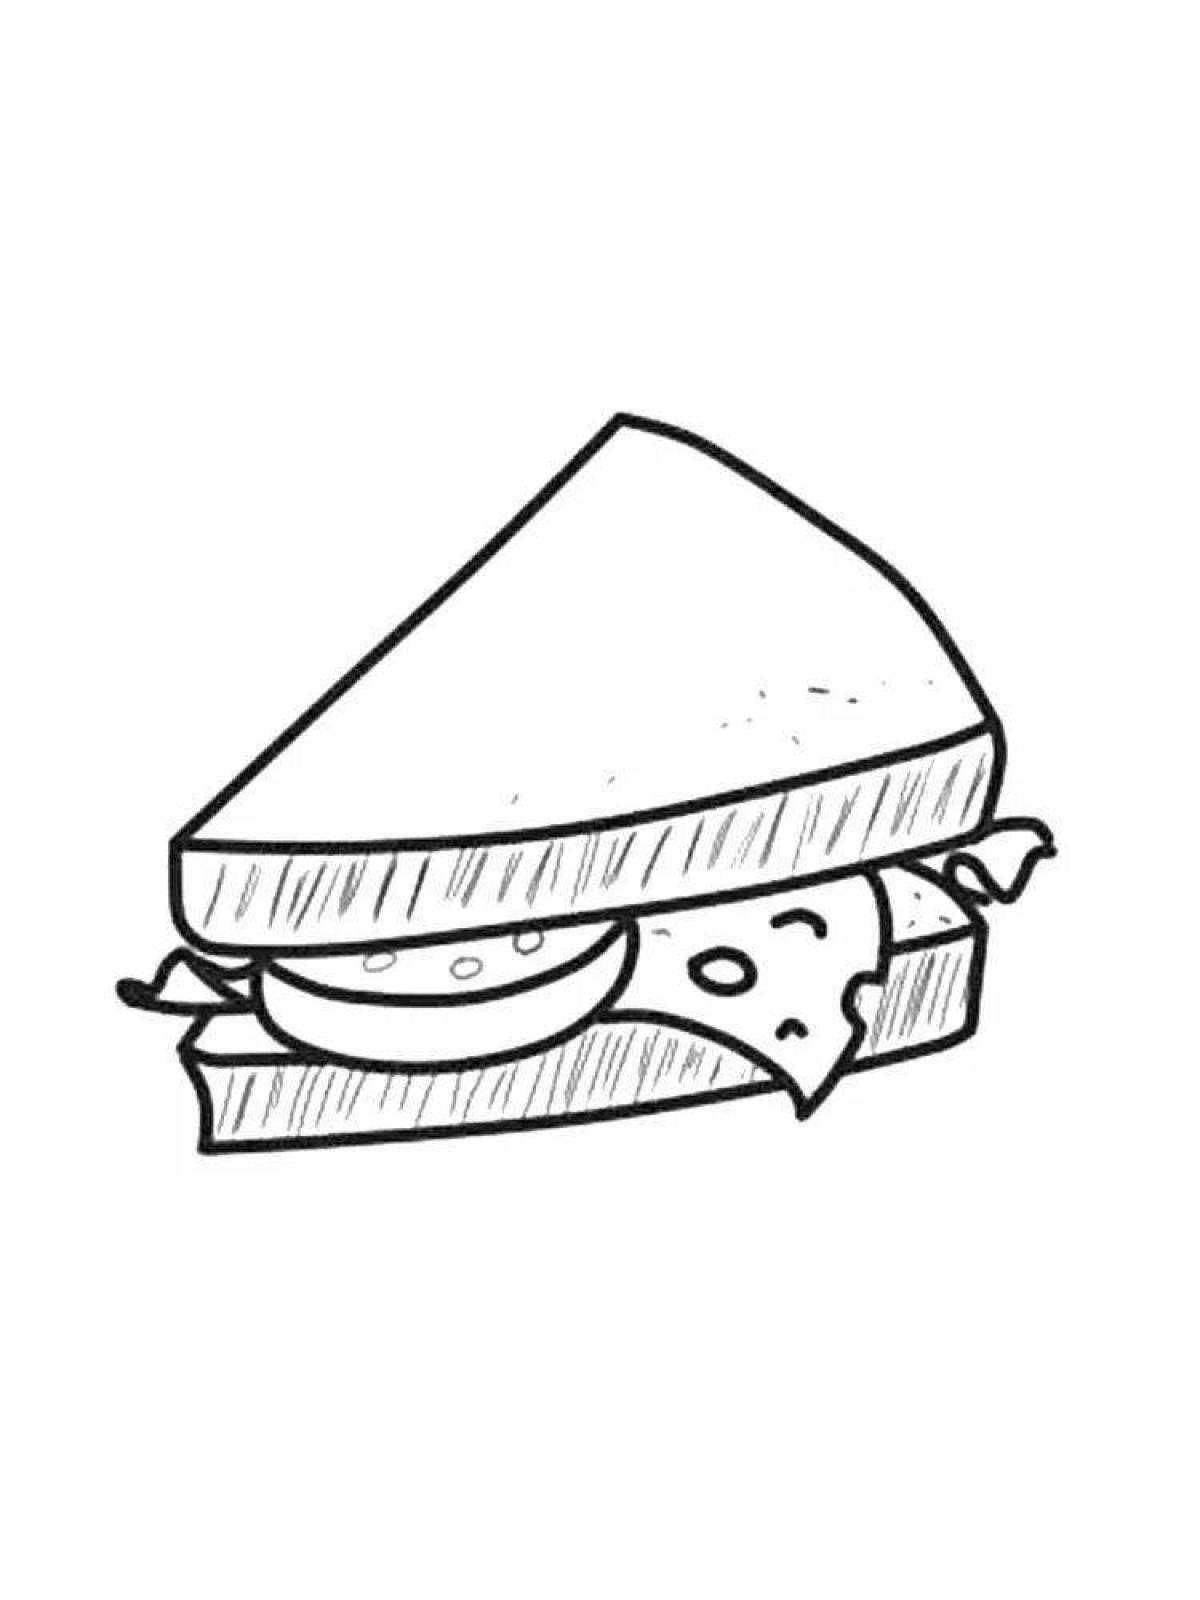 Сэндвич раскраска для детей